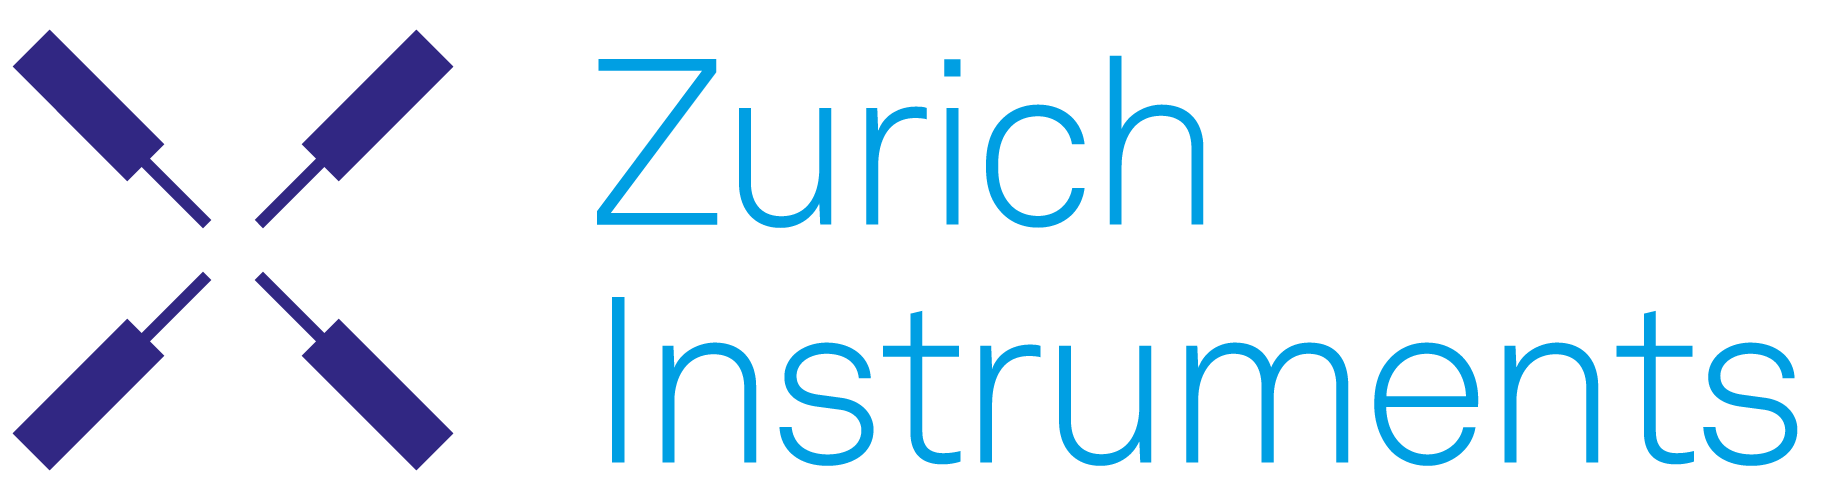 Zürichin instrumentit